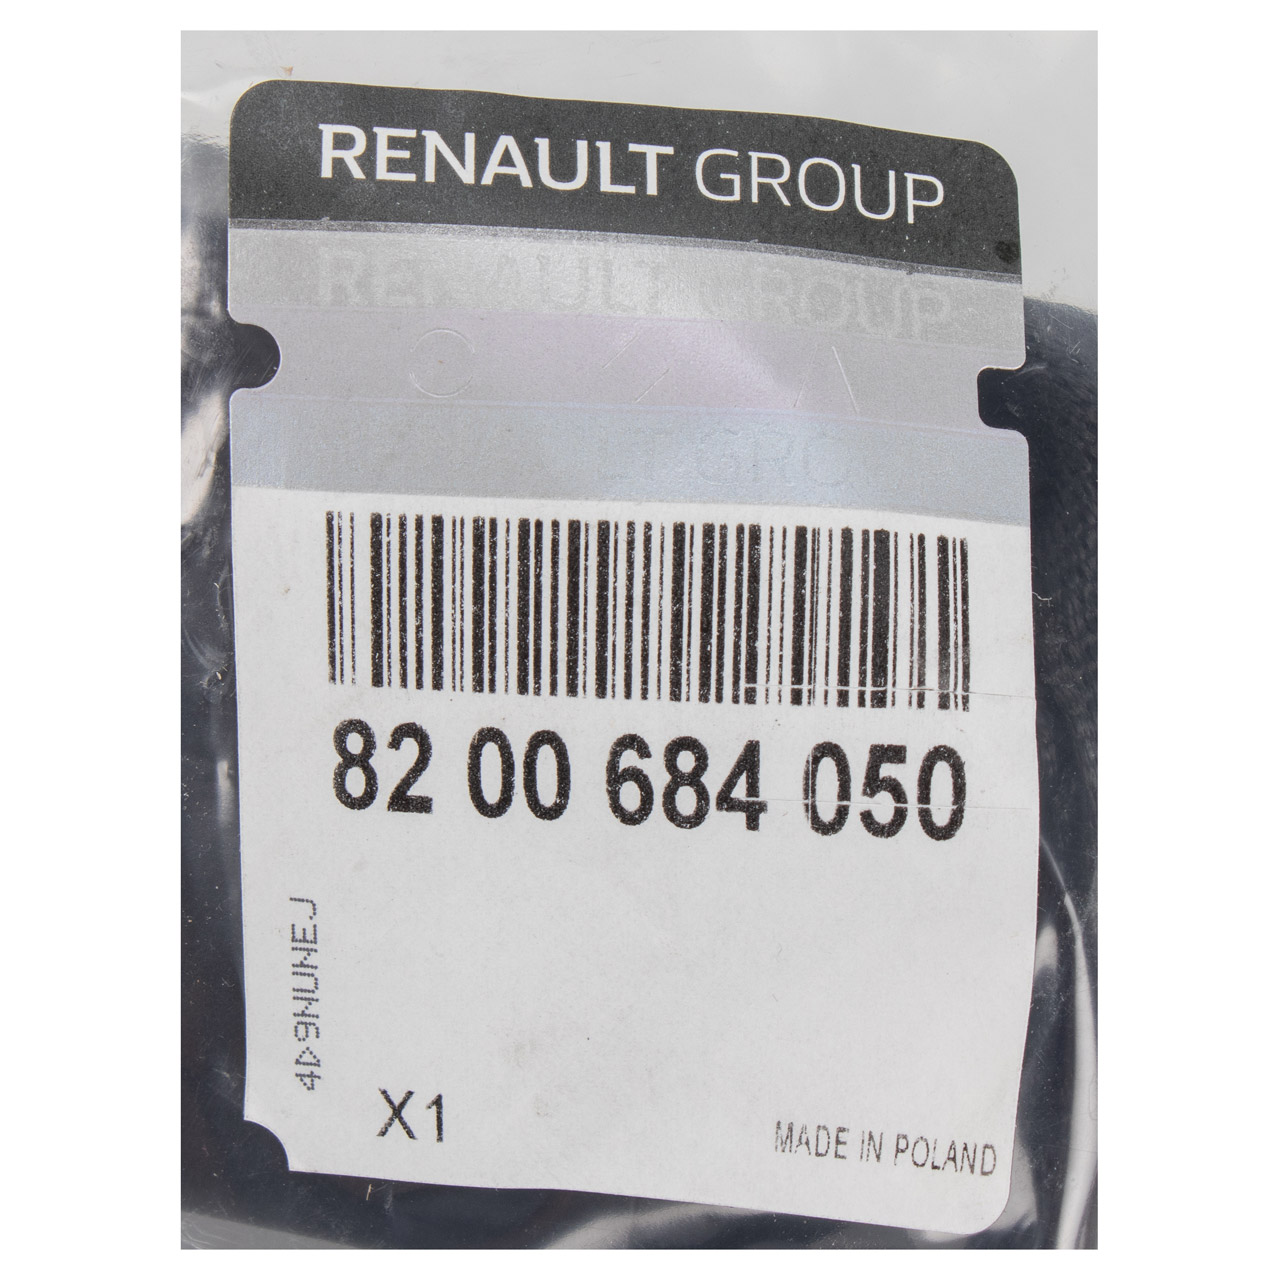 ORIGINAL Renault Gurtschloss Sicherheitsgurt Clio 2 hinten mitte 8200684050